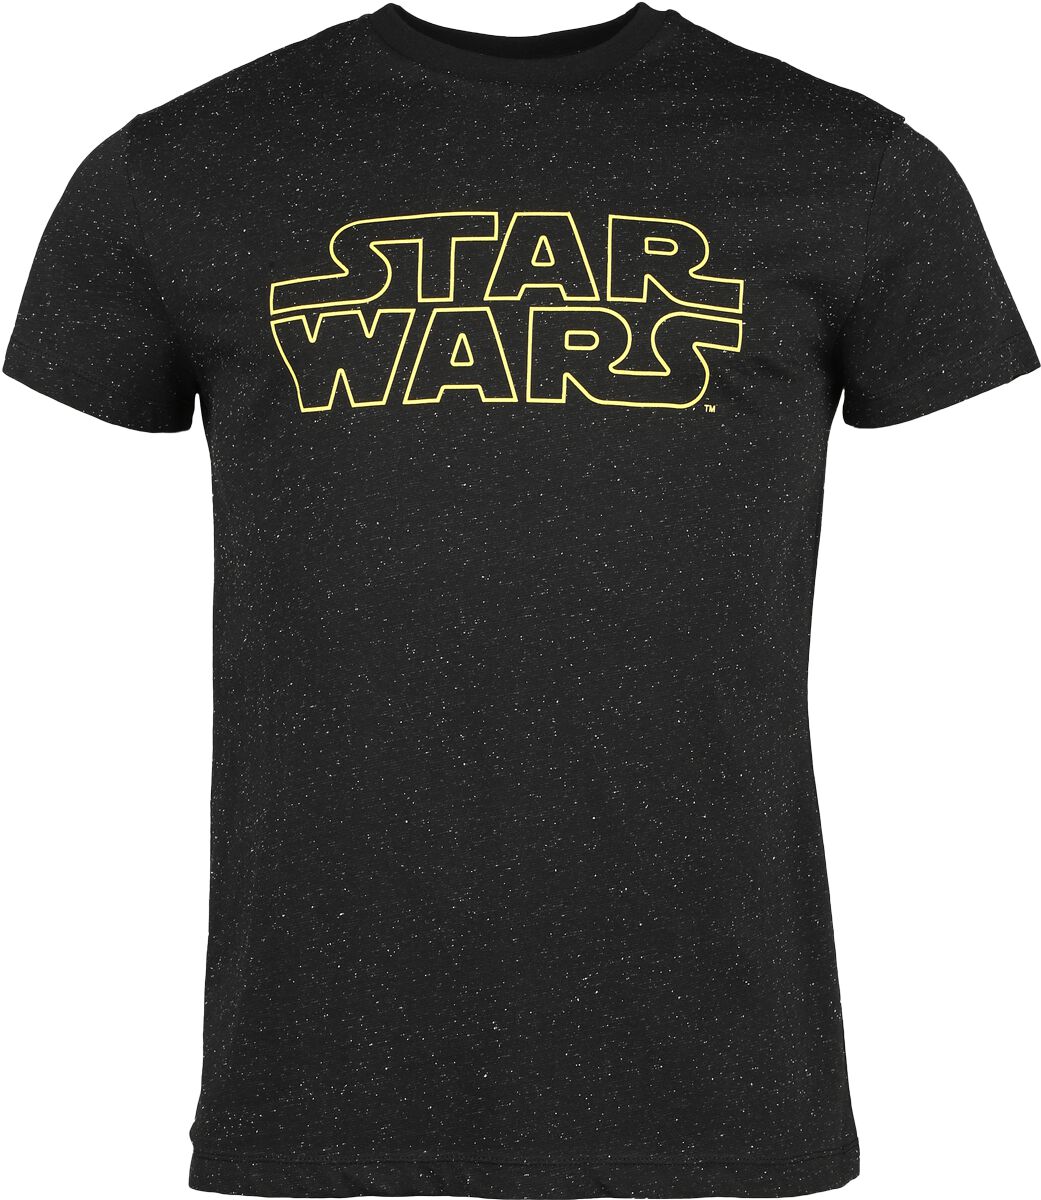 Star Wars Star Wars - Galaxy T-Shirt schwarz in S